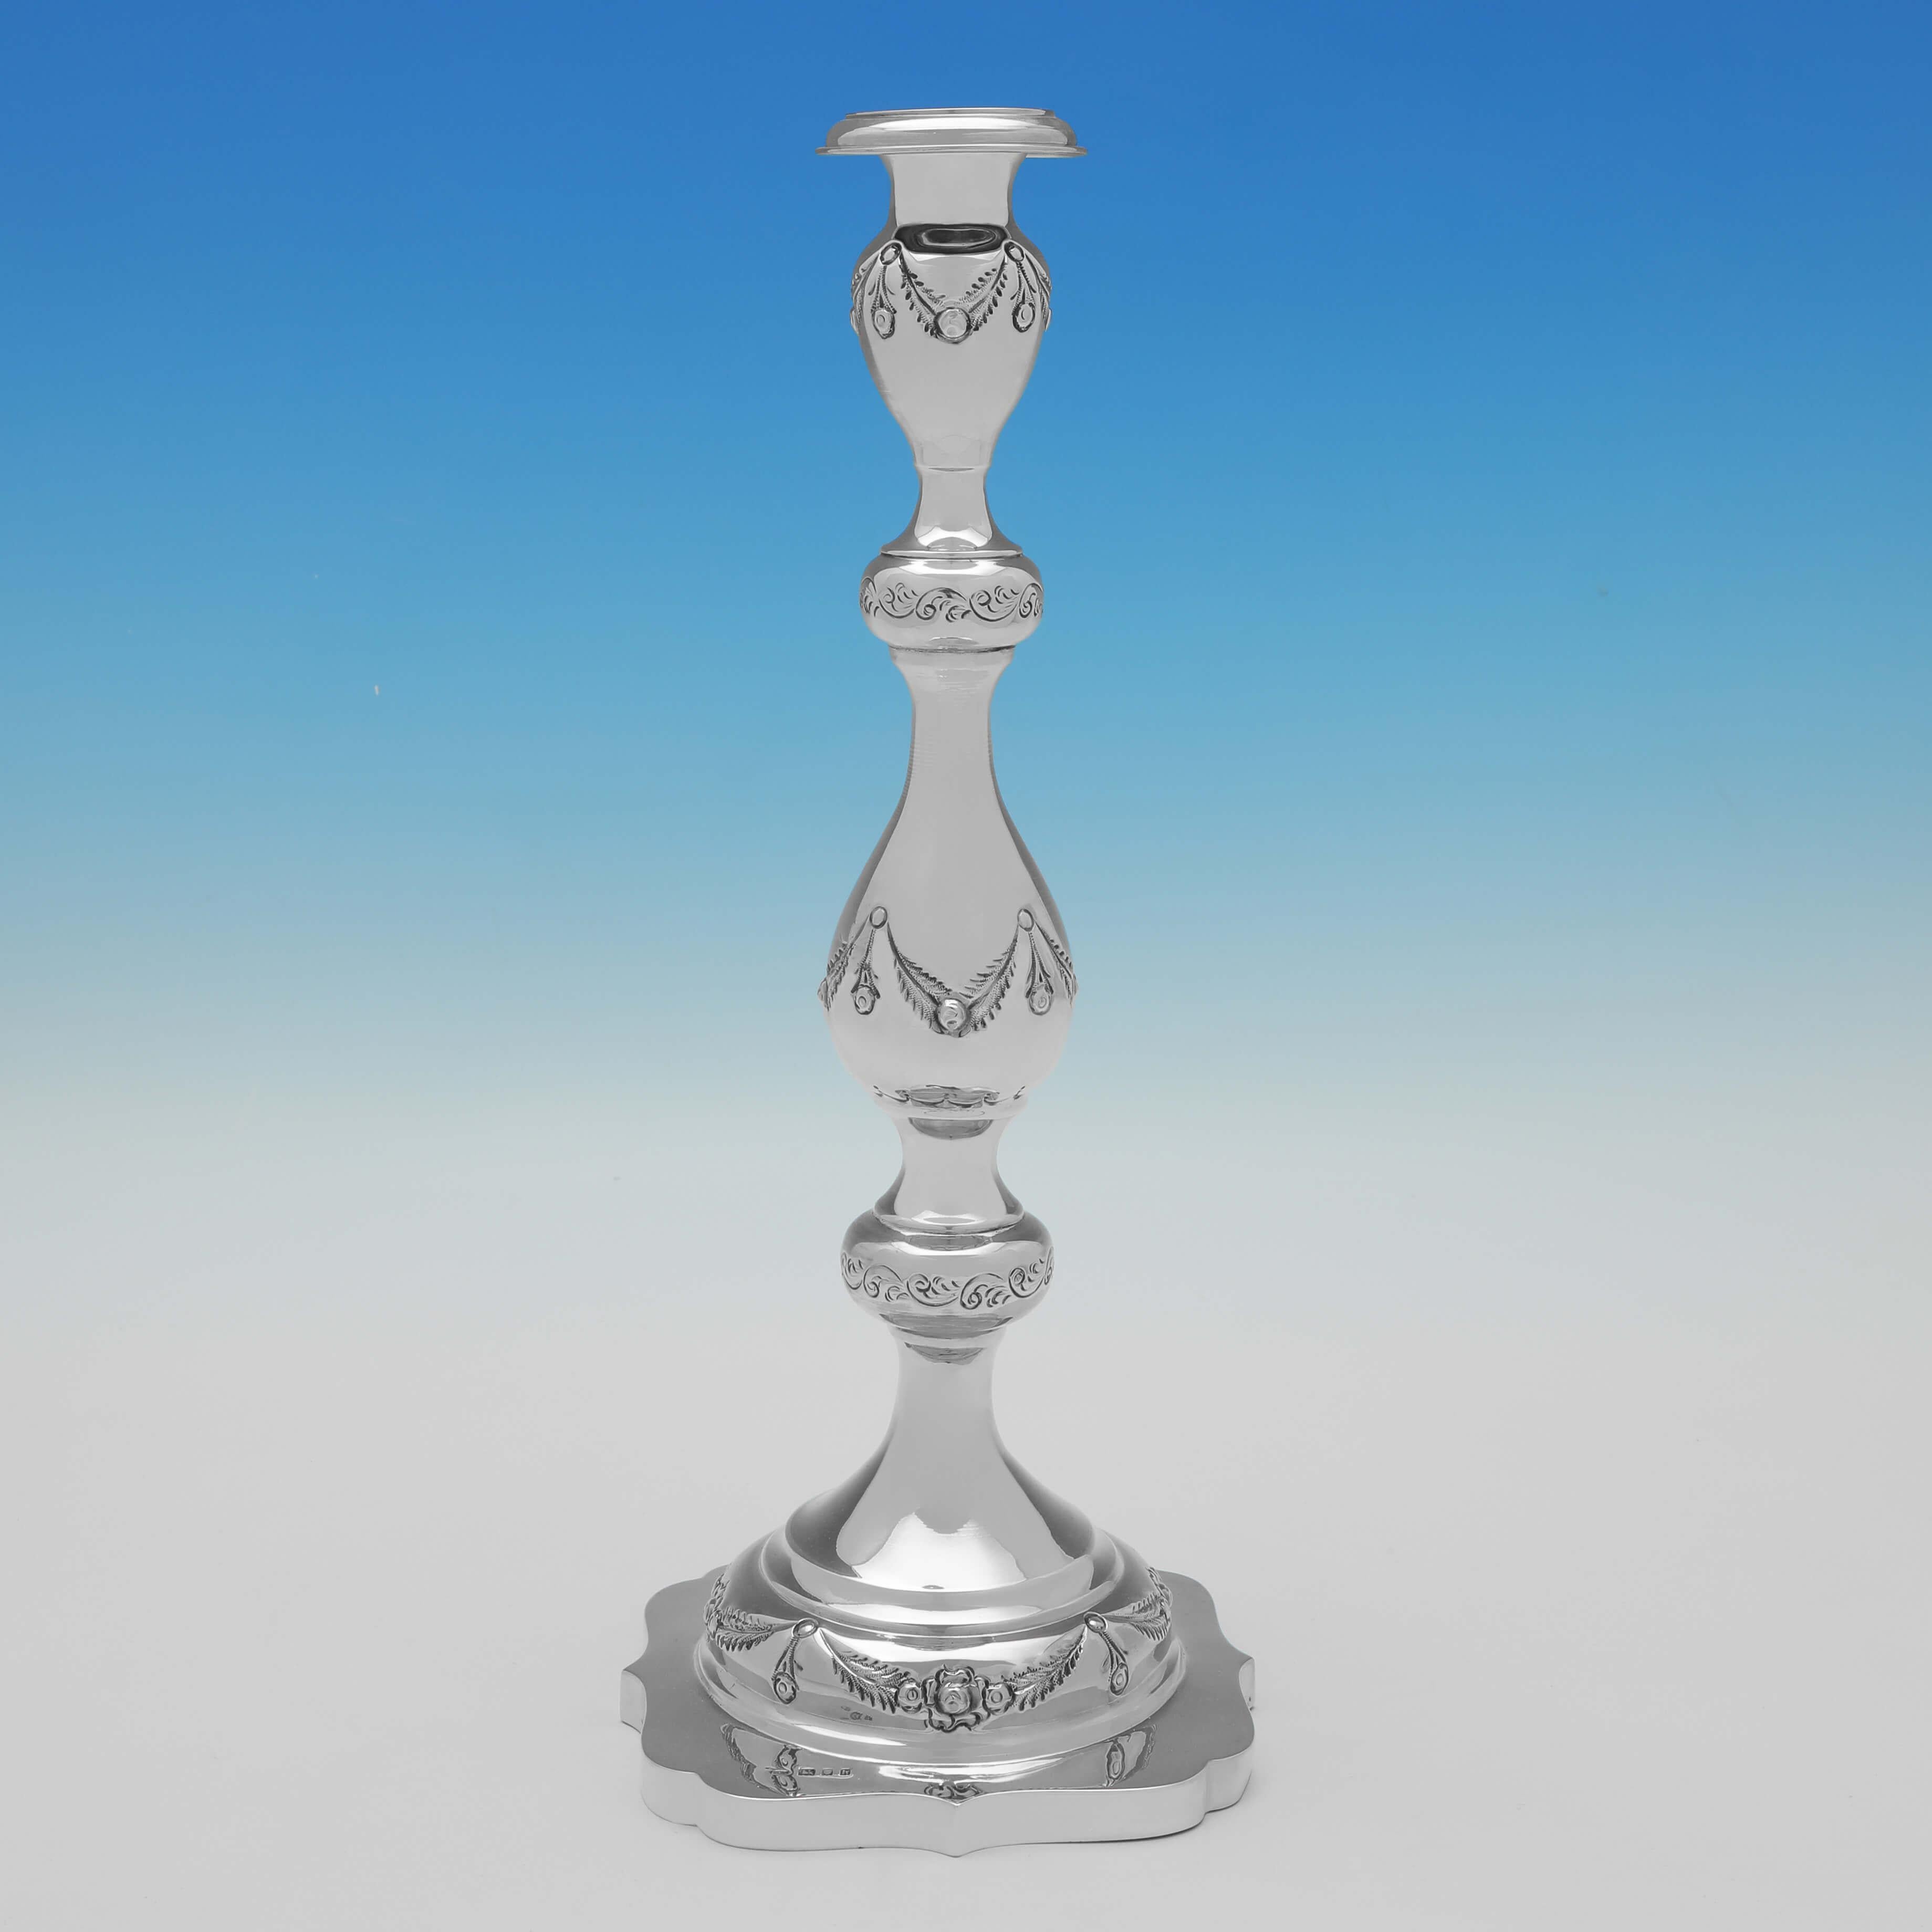 Dieses attraktive Paar antiker Sterling-Silber-Kerzenhalter wurde 1923 in London von Morris Salkind gepunzt und ist mit ziselierten Schwänzen und Schleifen versehen. 

Jeder Kerzenständer ist 36 cm (14,25